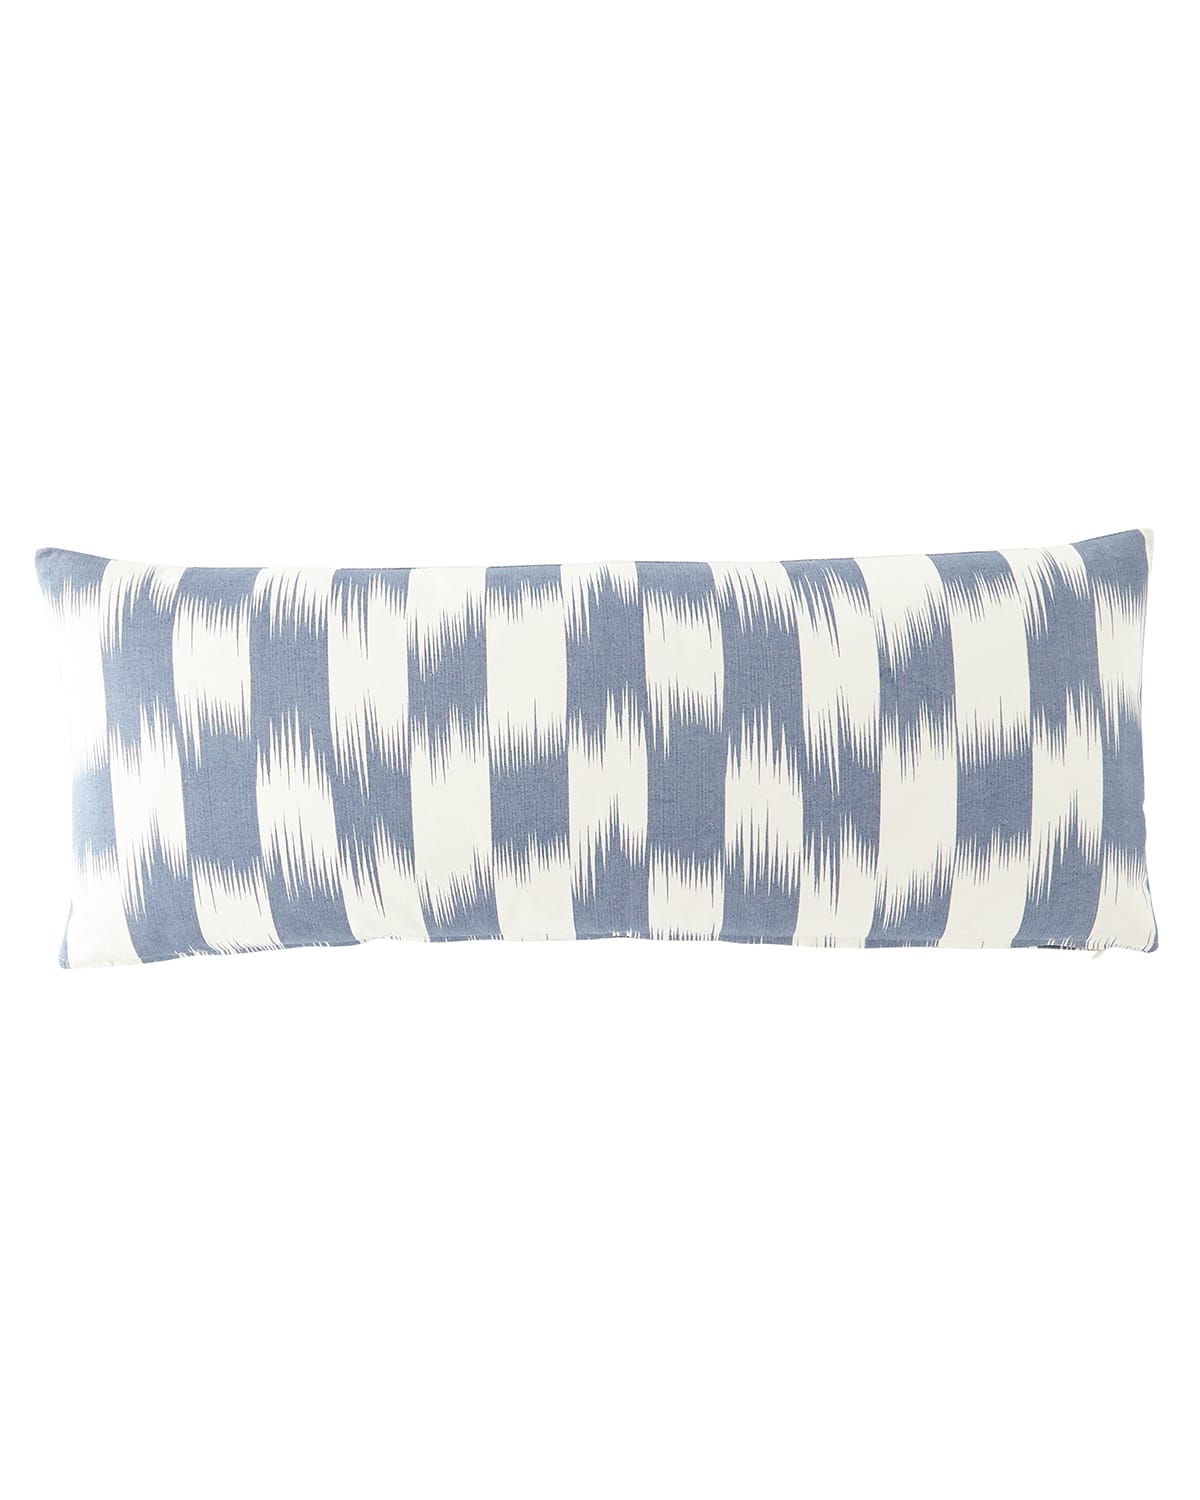 Image 25 Mackenzie Lane Checkerboard Pillow, 15" x 34"